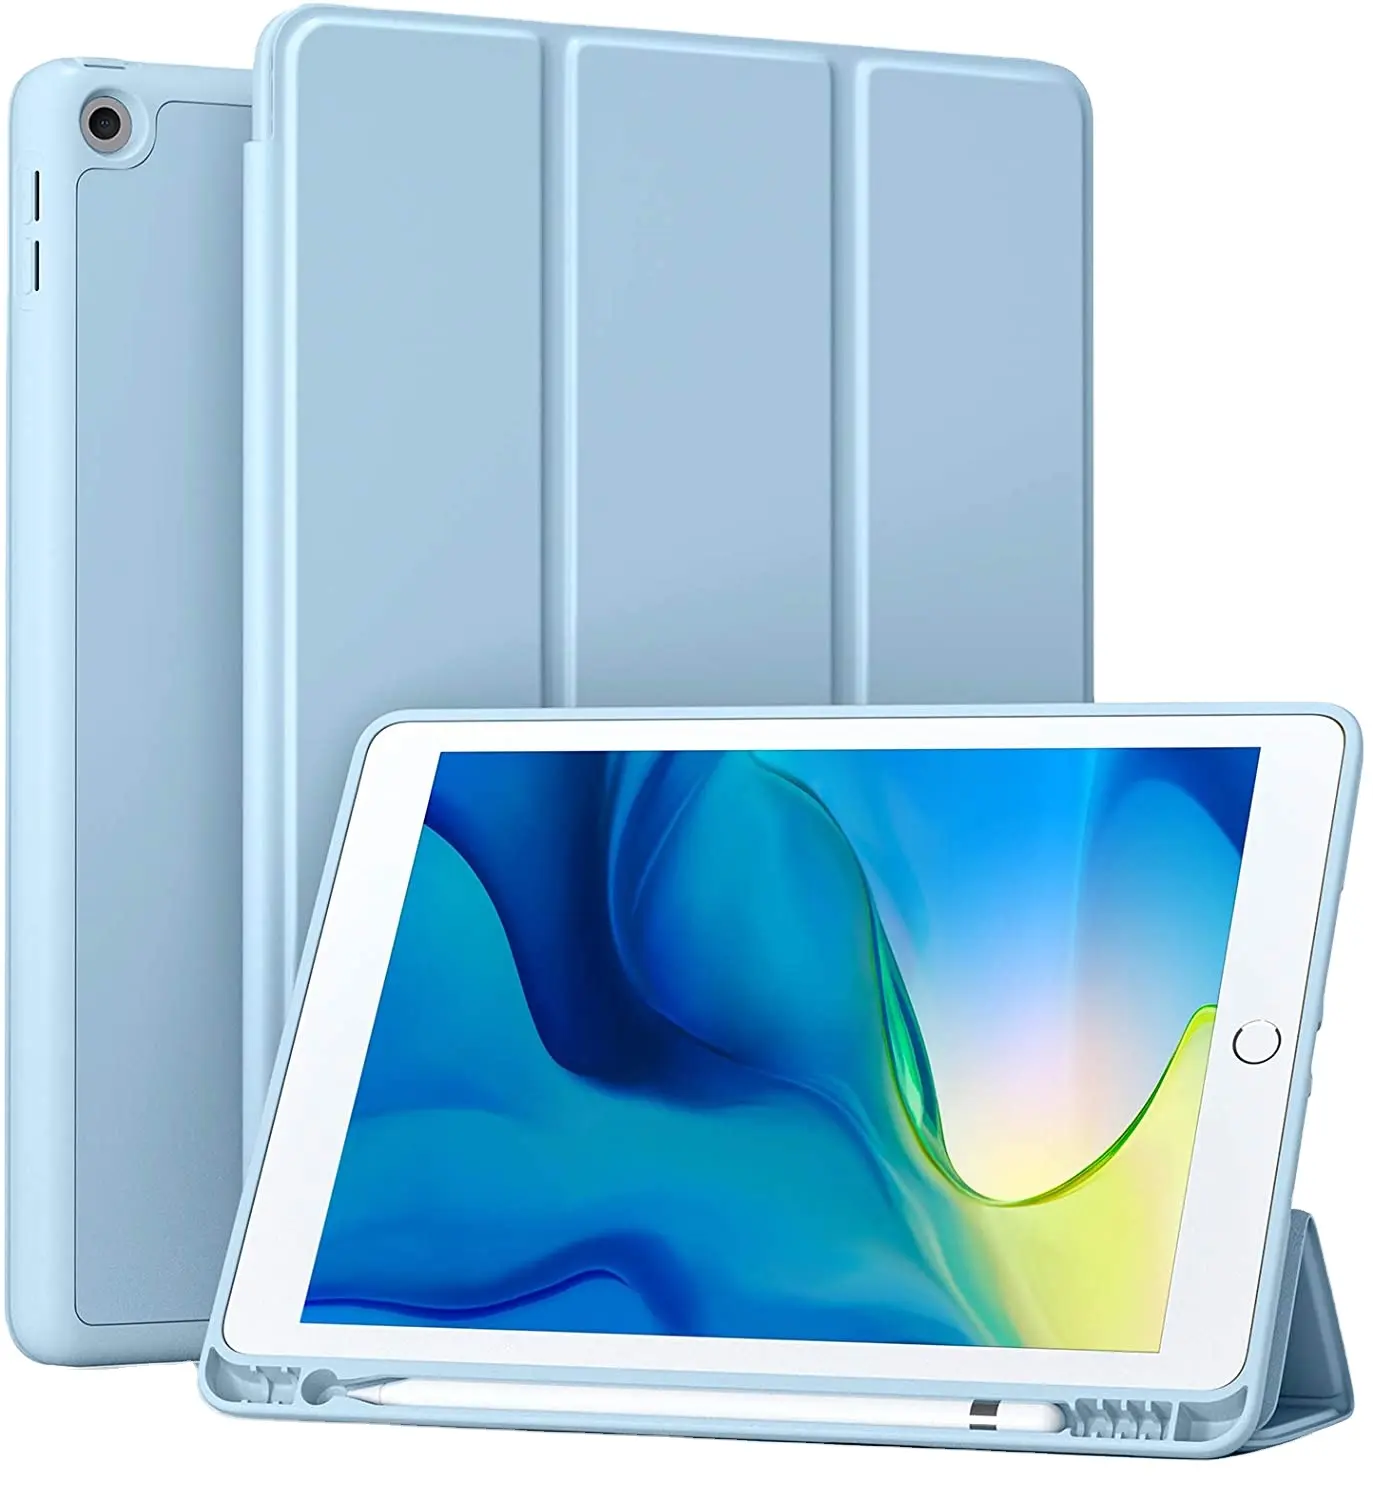 חדש הגעה Tablet כיסוי עבור iPad 7 8 9 10.2 אינץ עמיד למים אנטי-סתיו עם עיפרון מחזיק מקרה עבור iPad 10.2